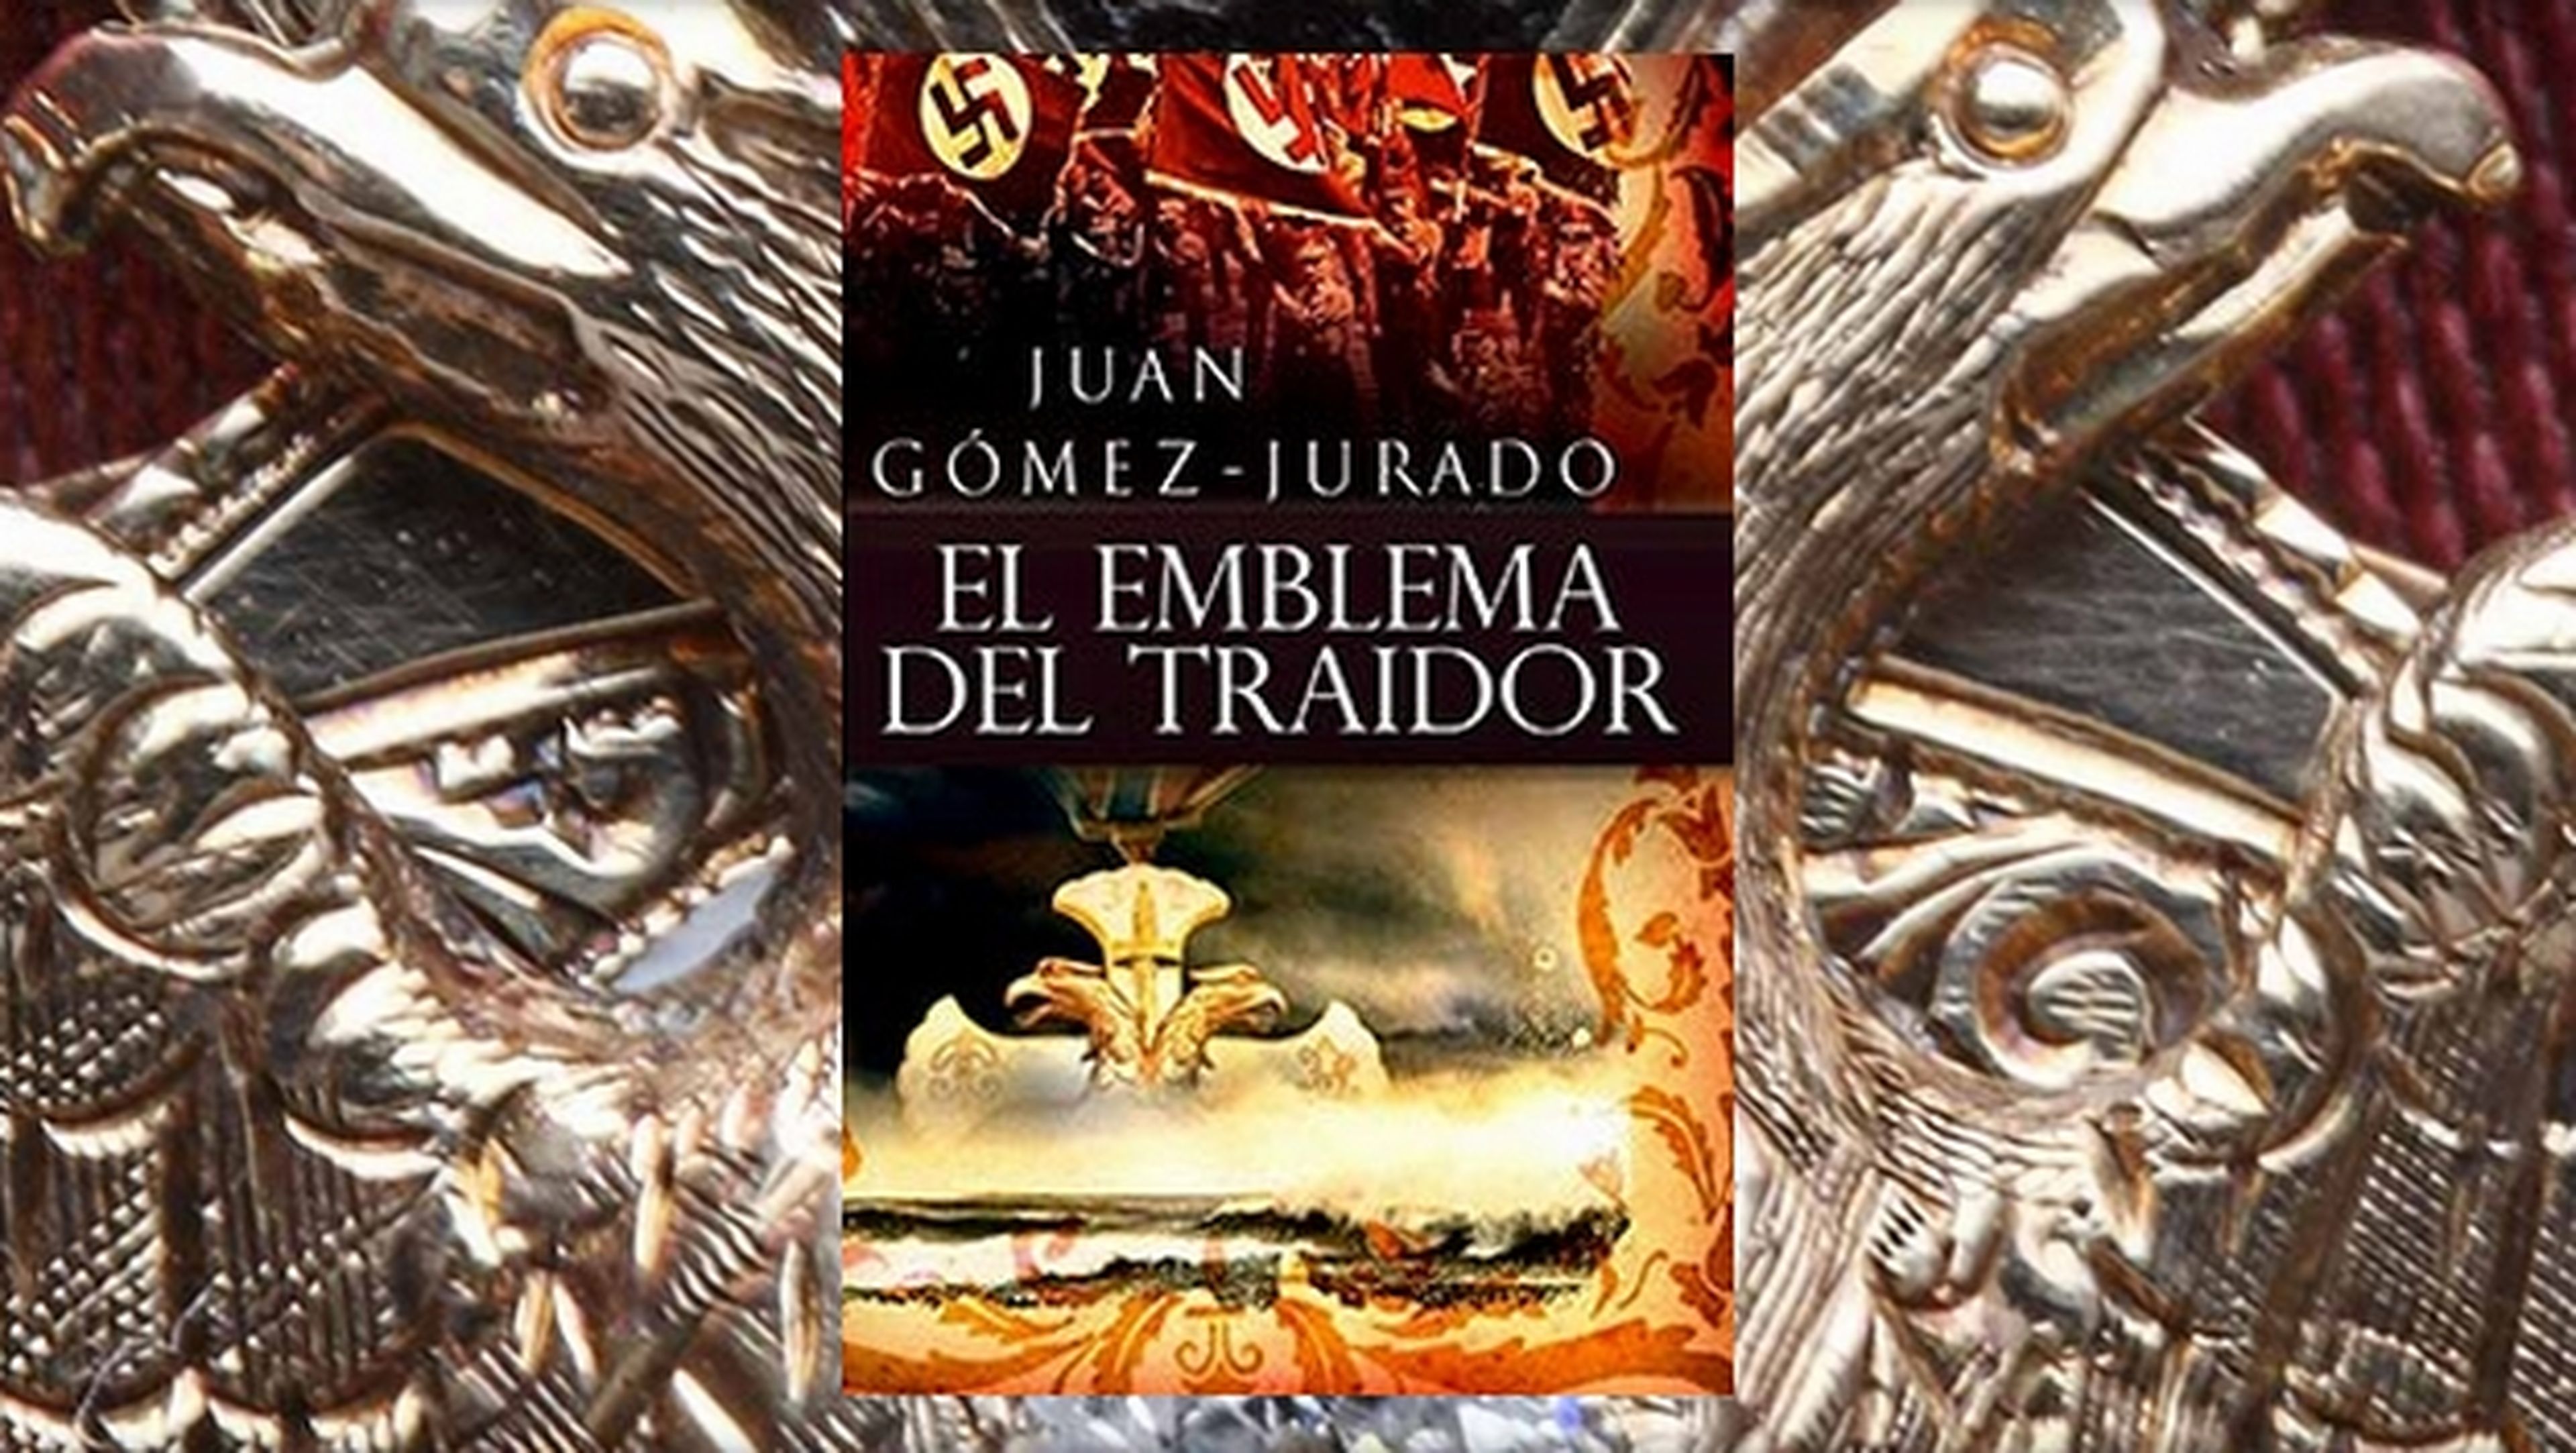 El ebook El Emblema del Traidor de Juan Gómez-Jurado gratis en la Tienda Kindle de Amazon, sólo este fin de semana.